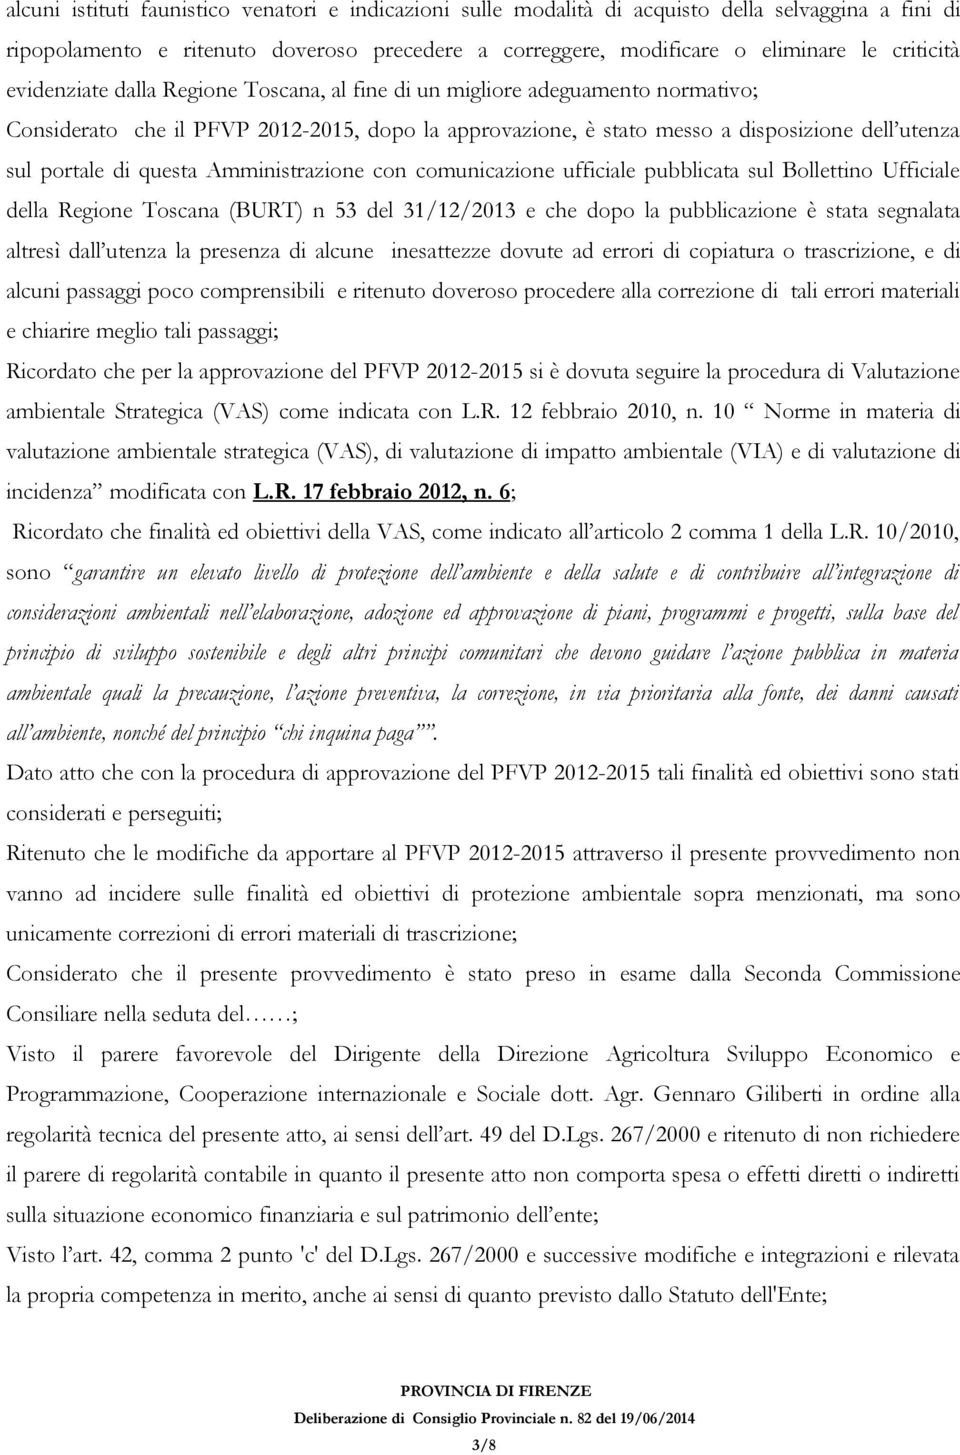 questa Amministrazione con comunicazione ufficiale pubblicata sul Bollettino Ufficiale della Regione Toscana (BURT) n 53 del 31/12/2013 e che dopo la pubblicazione è stata segnalata altresì dall